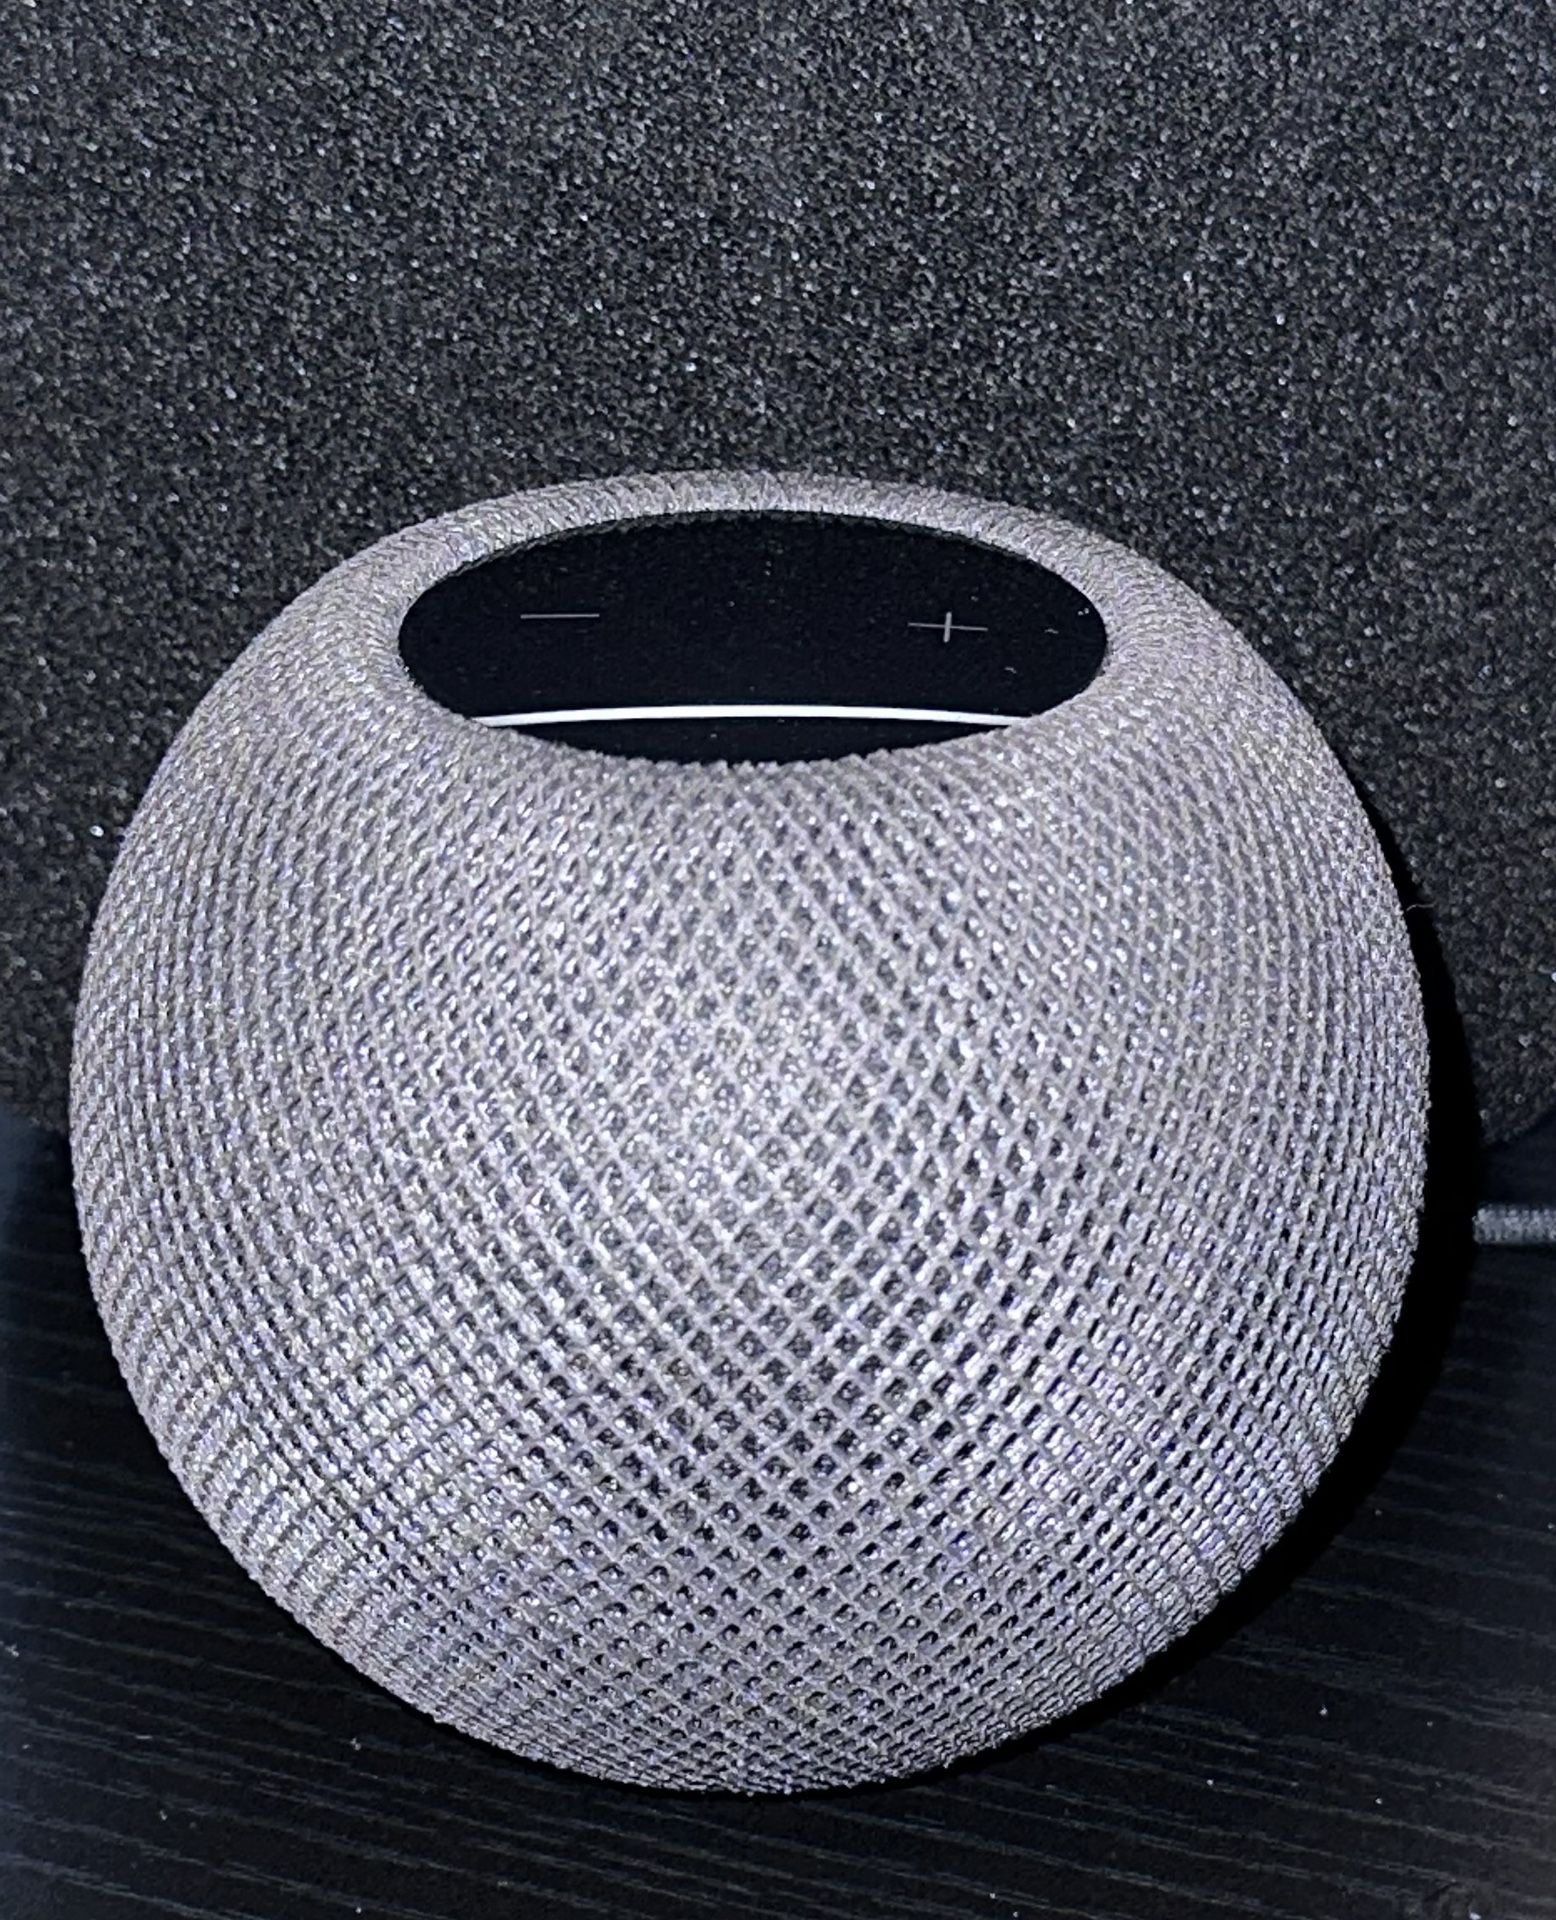 HomePod Mini Speaker